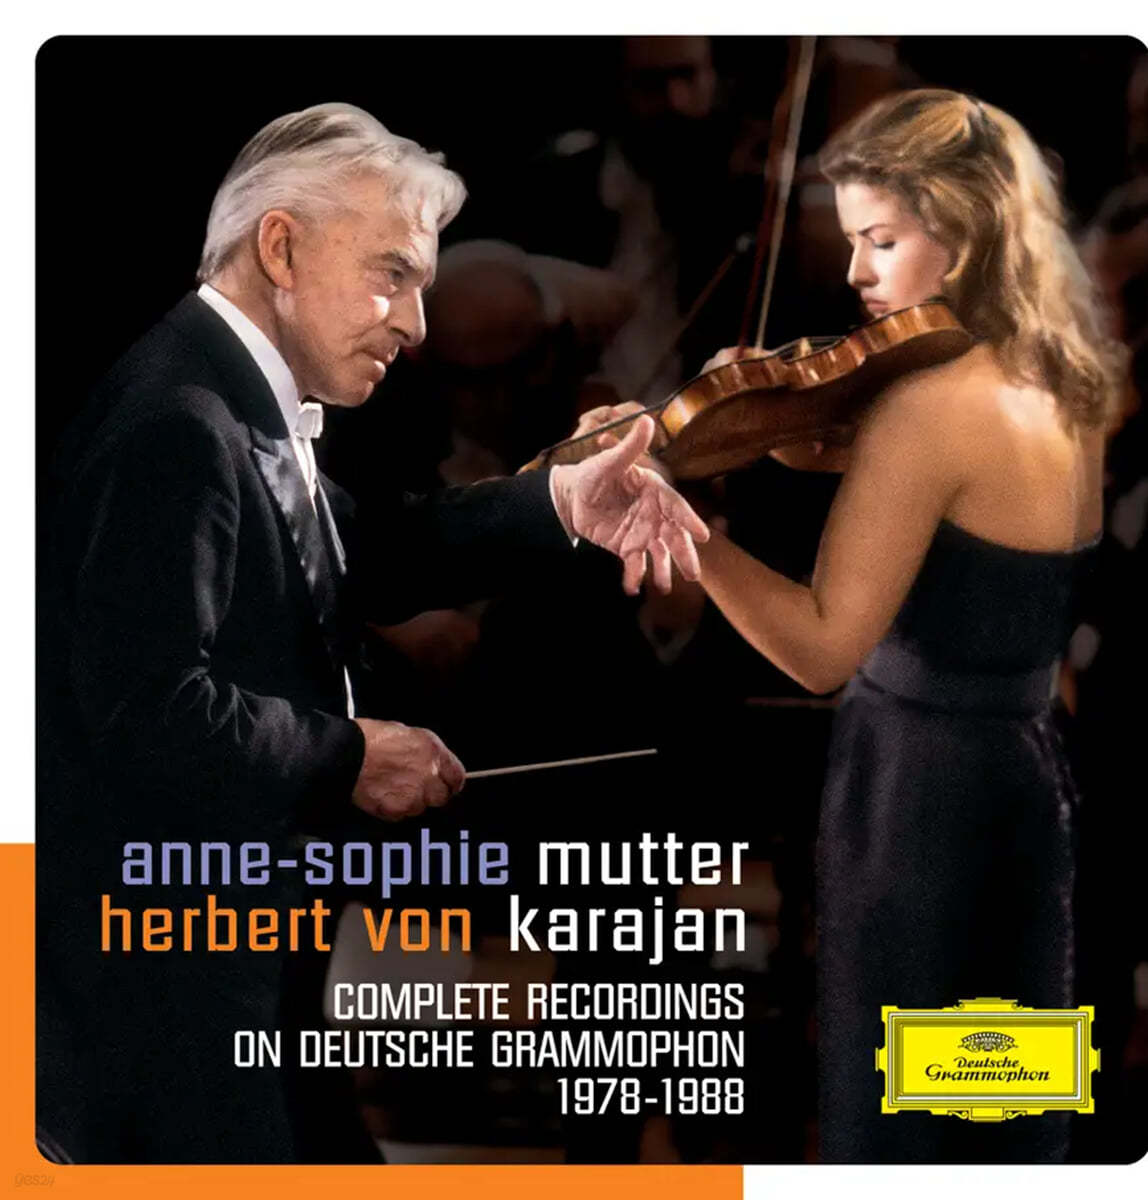 Anne-Sophie Mutter / Herbert von Karajan 무터와 카라얀의 DG 녹음 전집 (Complete Recordings on Deutsche Grammophon 1978-1988)